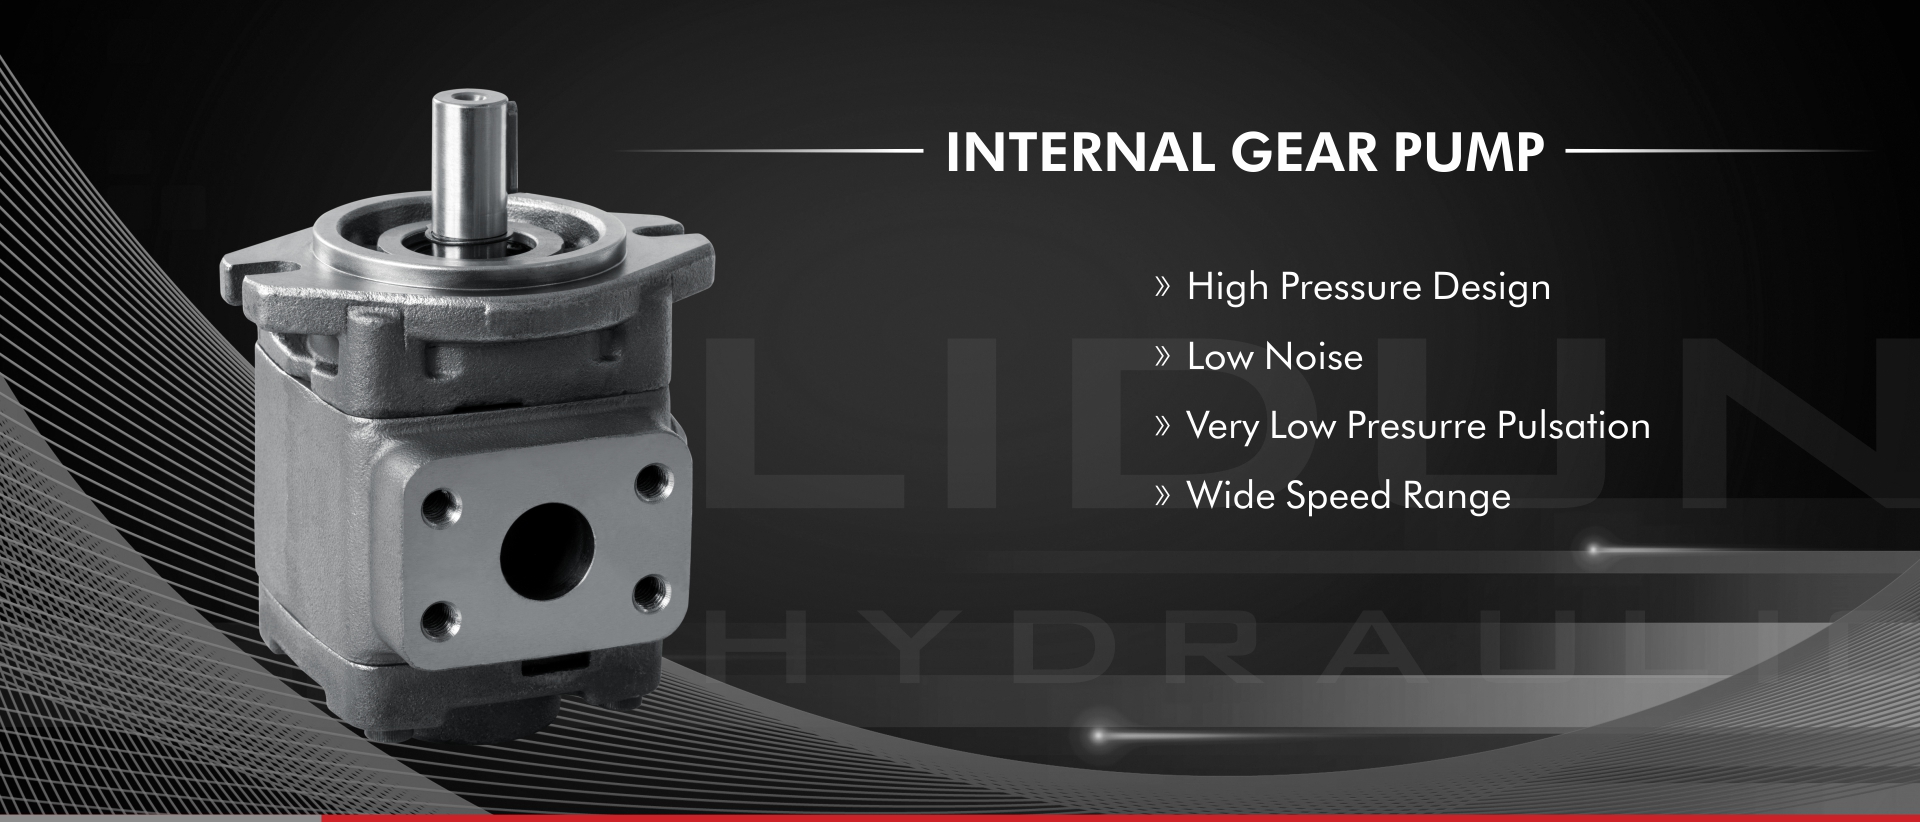 HG Serie Intern Gear Pompel Produkter